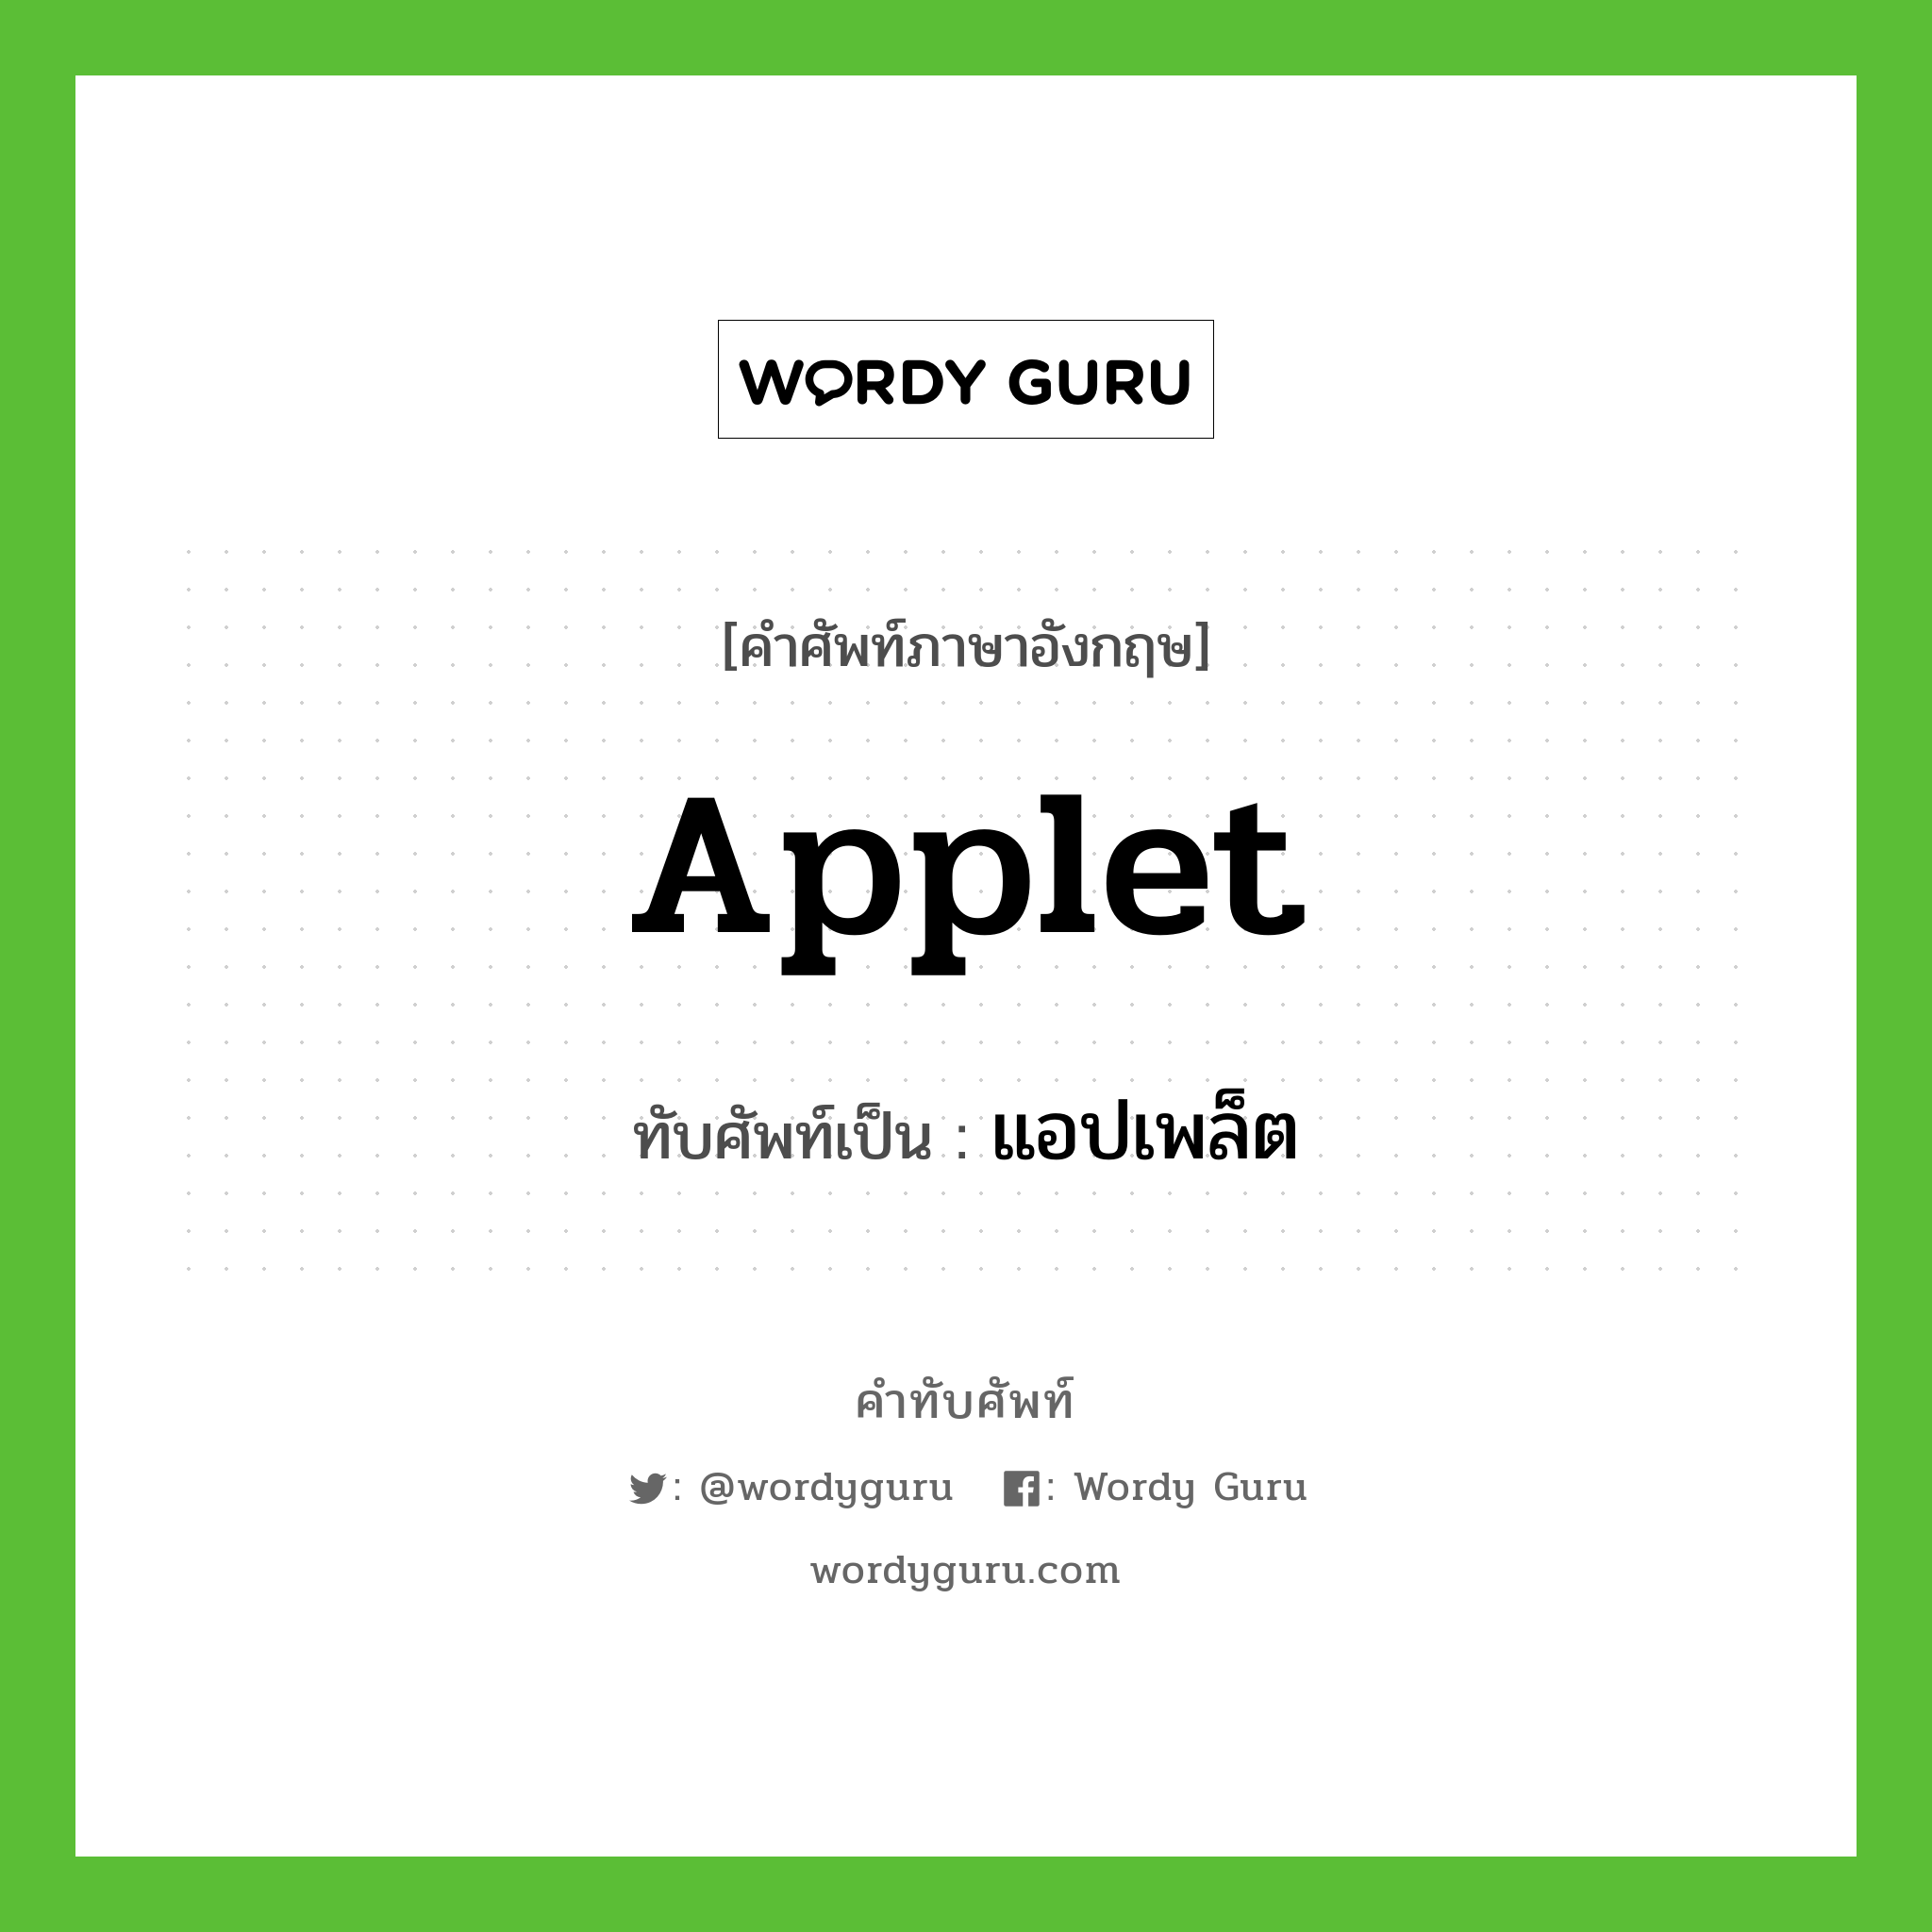 applet เขียนเป็นคำไทยว่าอะไร?, คำศัพท์ภาษาอังกฤษ applet ทับศัพท์เป็น แอปเพล็ต